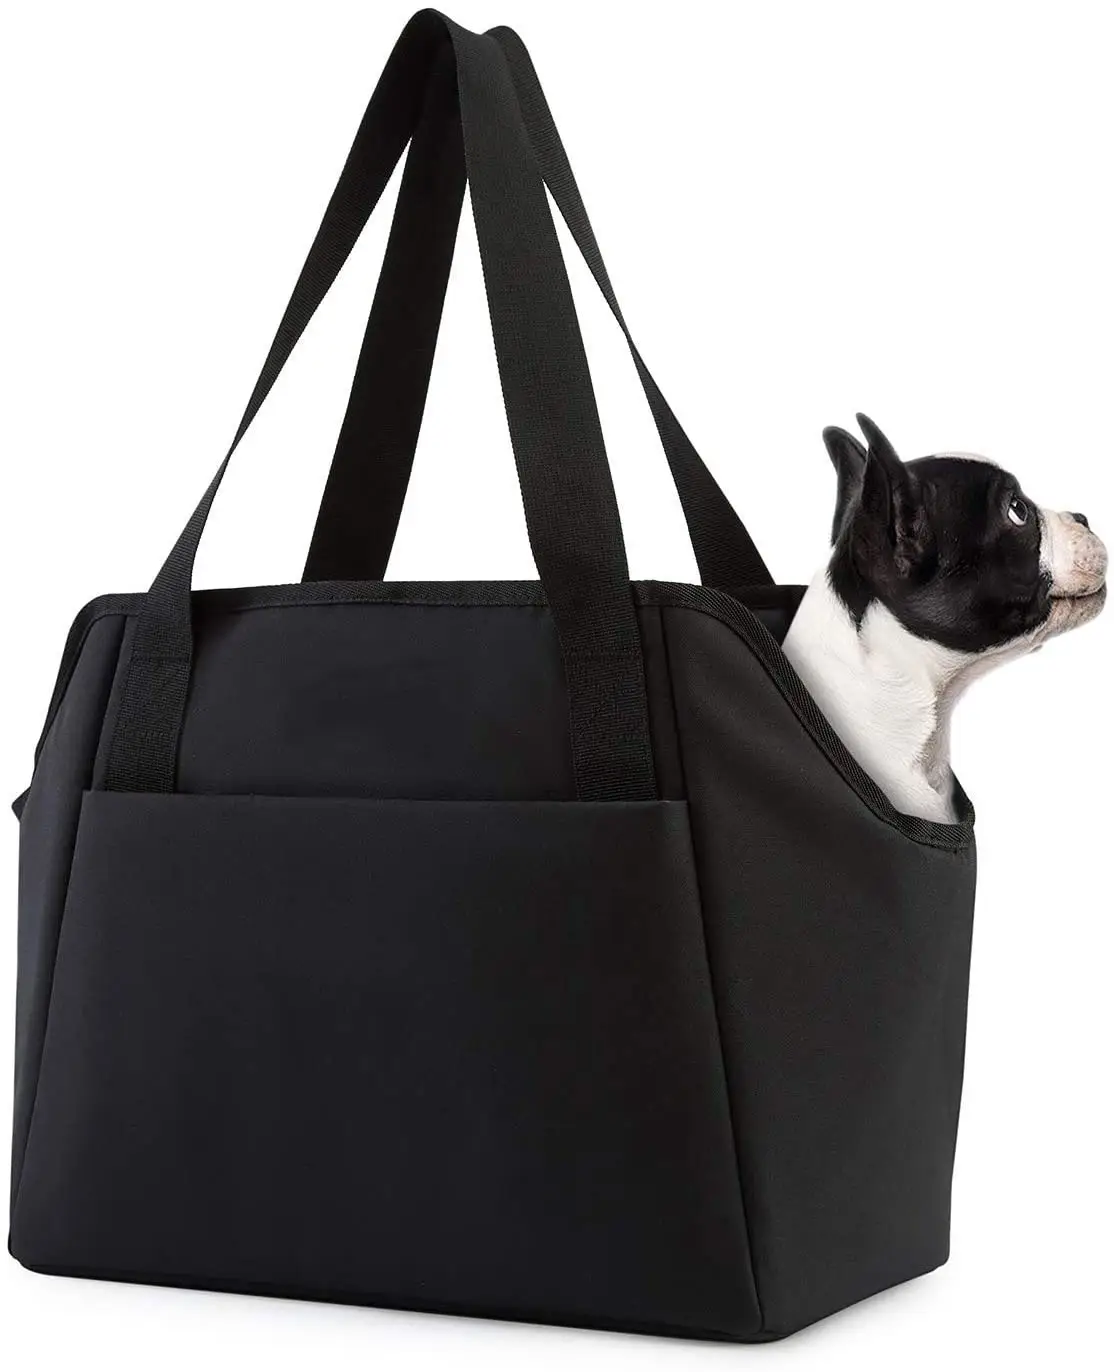 Kleine Geldbörse für Hunde träger mit Taschen Soft Sided Carrier Verstellbarer Sicherheits gurt Vielseitige Einkaufstasche für Haustiere